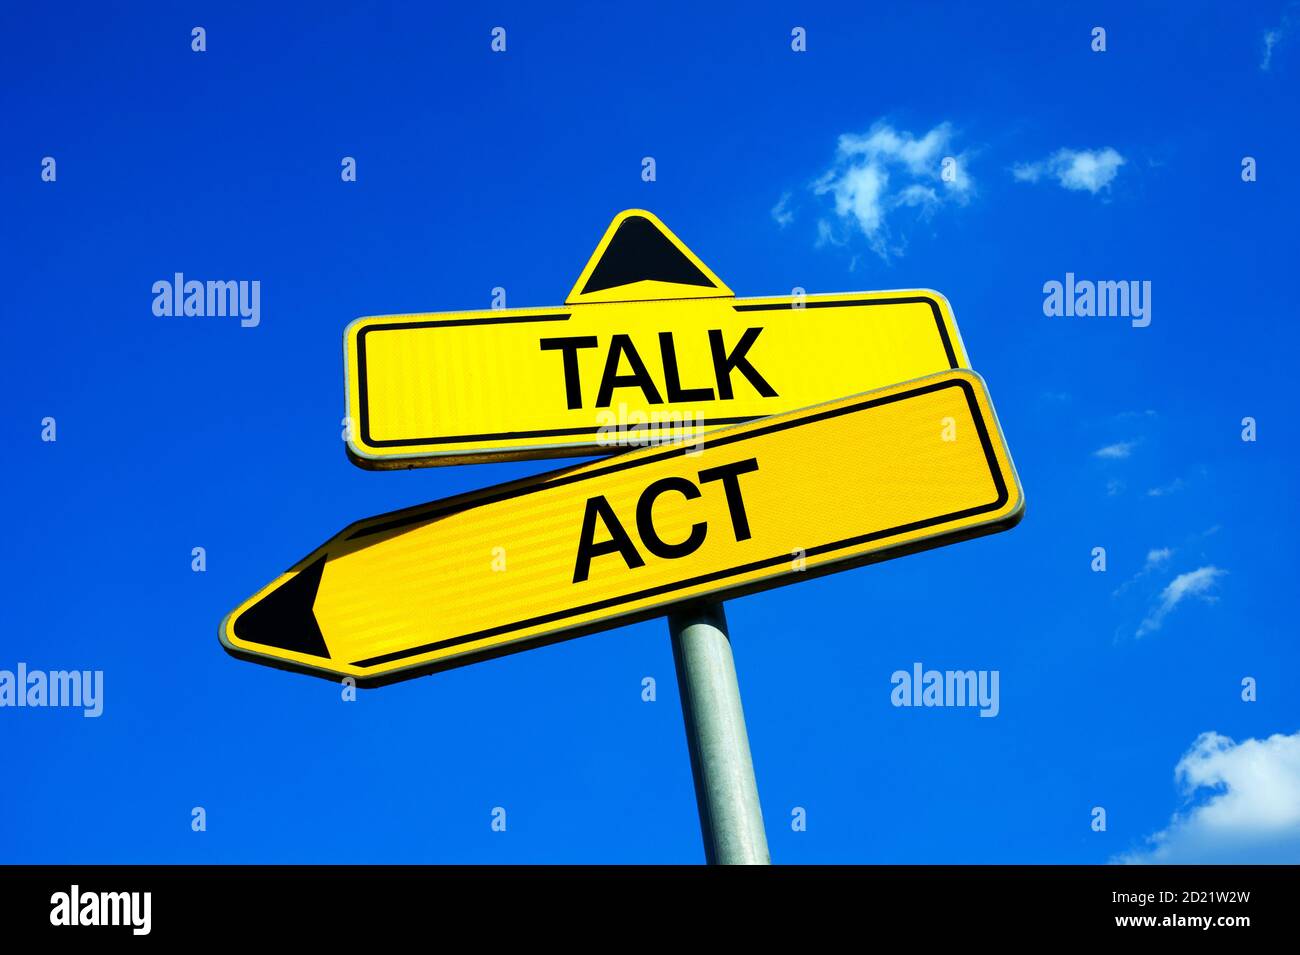 Talk or Act - segnale di traffico con due opzioni: Conversazione passiva o attività attiva. Realizzazione e coraggio di agire contro codardia del talker Foto Stock